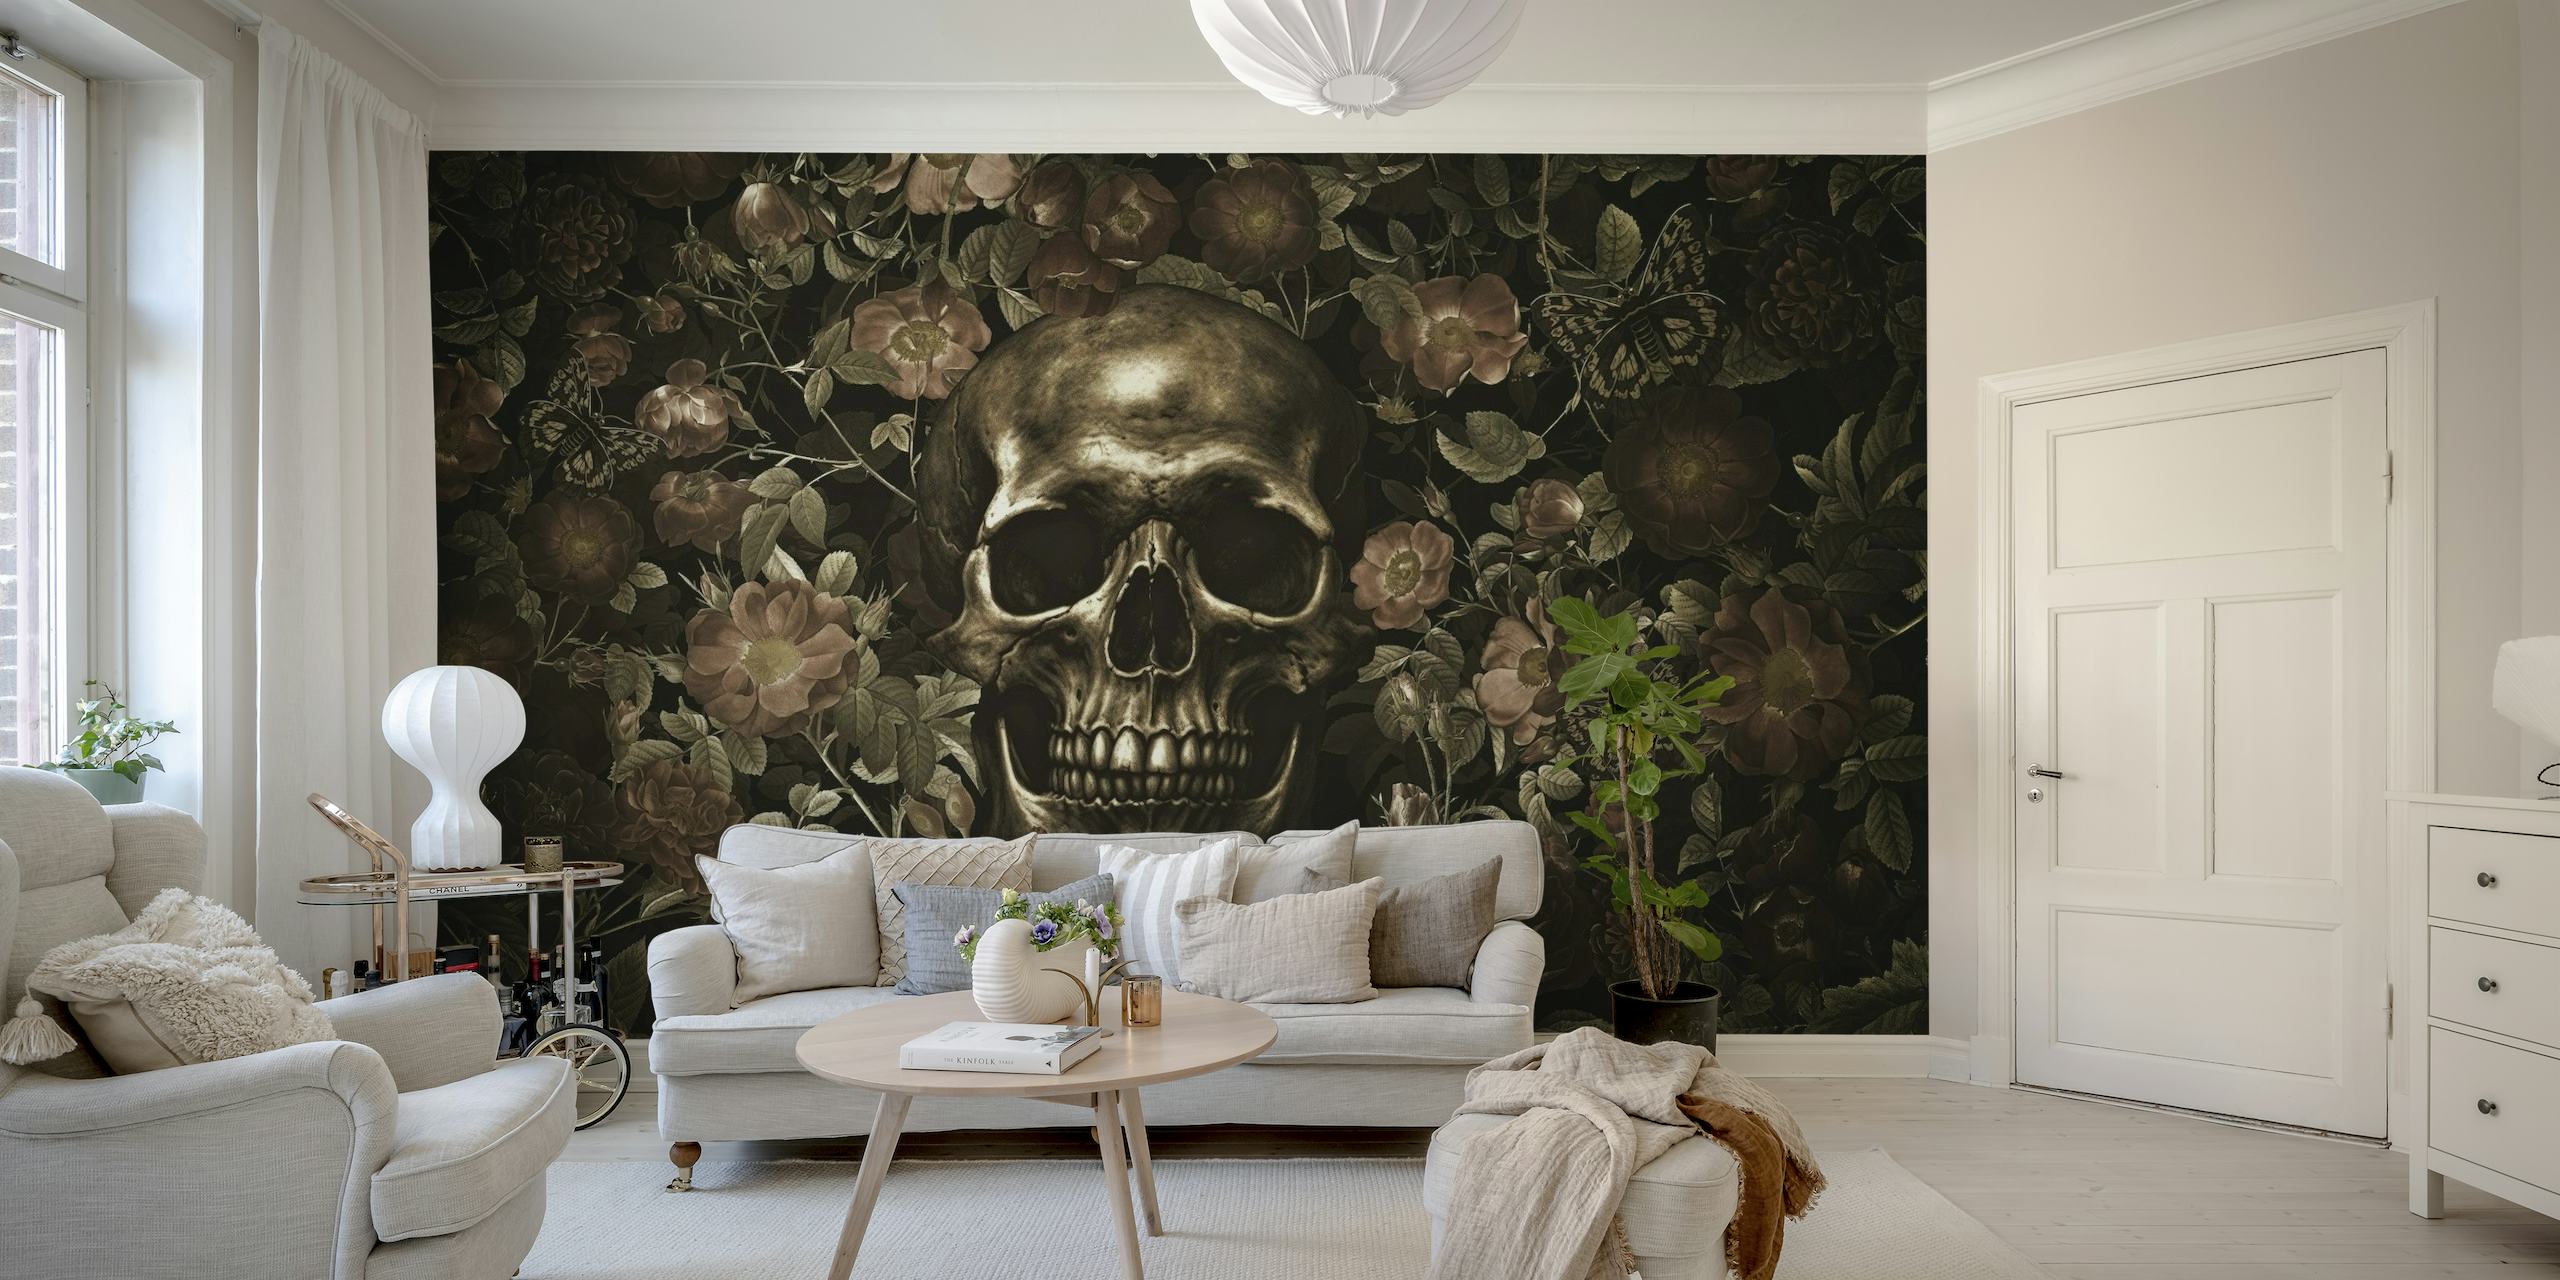 Une fresque murale d'inspiration gothique représentant un crâne doré entouré de roses sombres en fleurs.